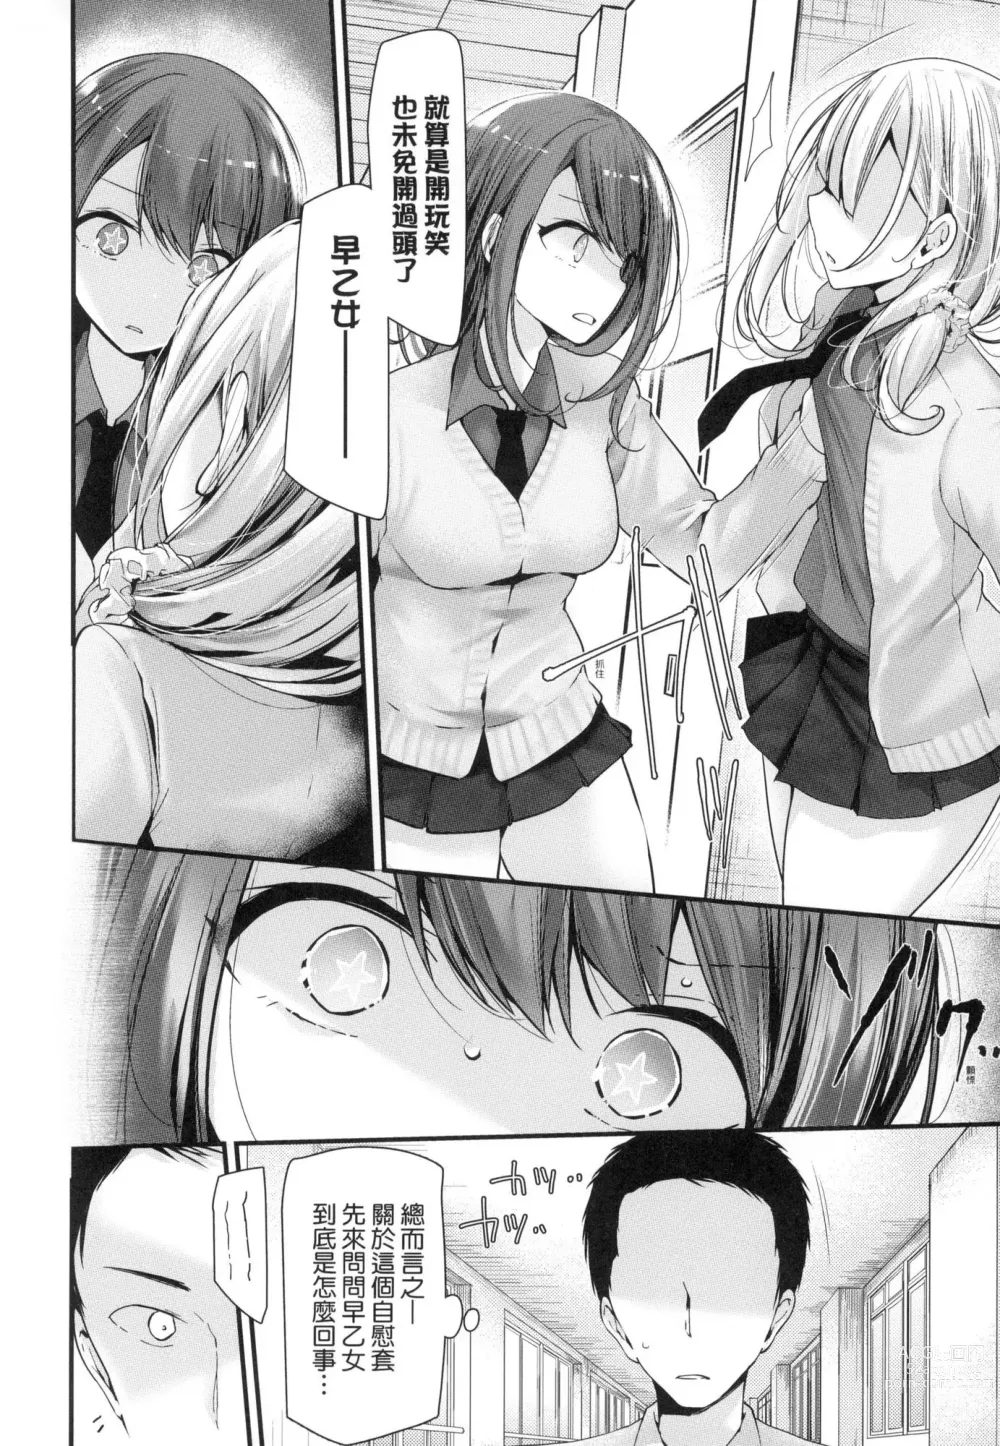 Page 34 of manga 自慰套教室-新學期- 女學生播種懲罰計畫 (decensored)